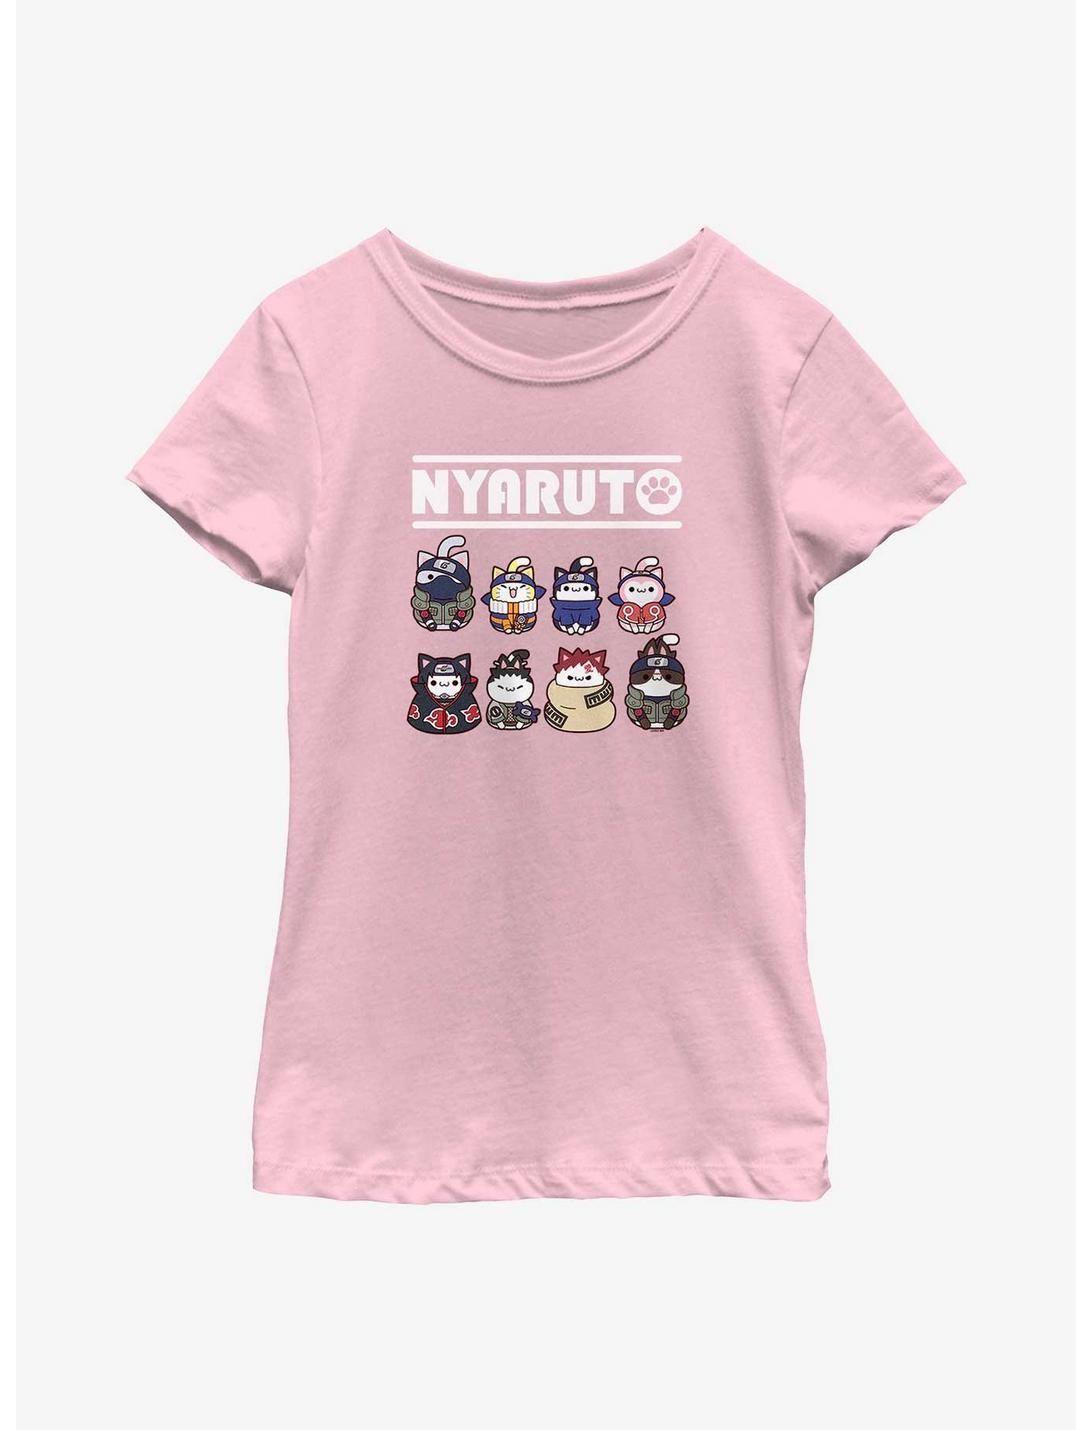 Naruto Nyaruto Cat Lineup Youth Girls T-Shirt, PINK, hi-res